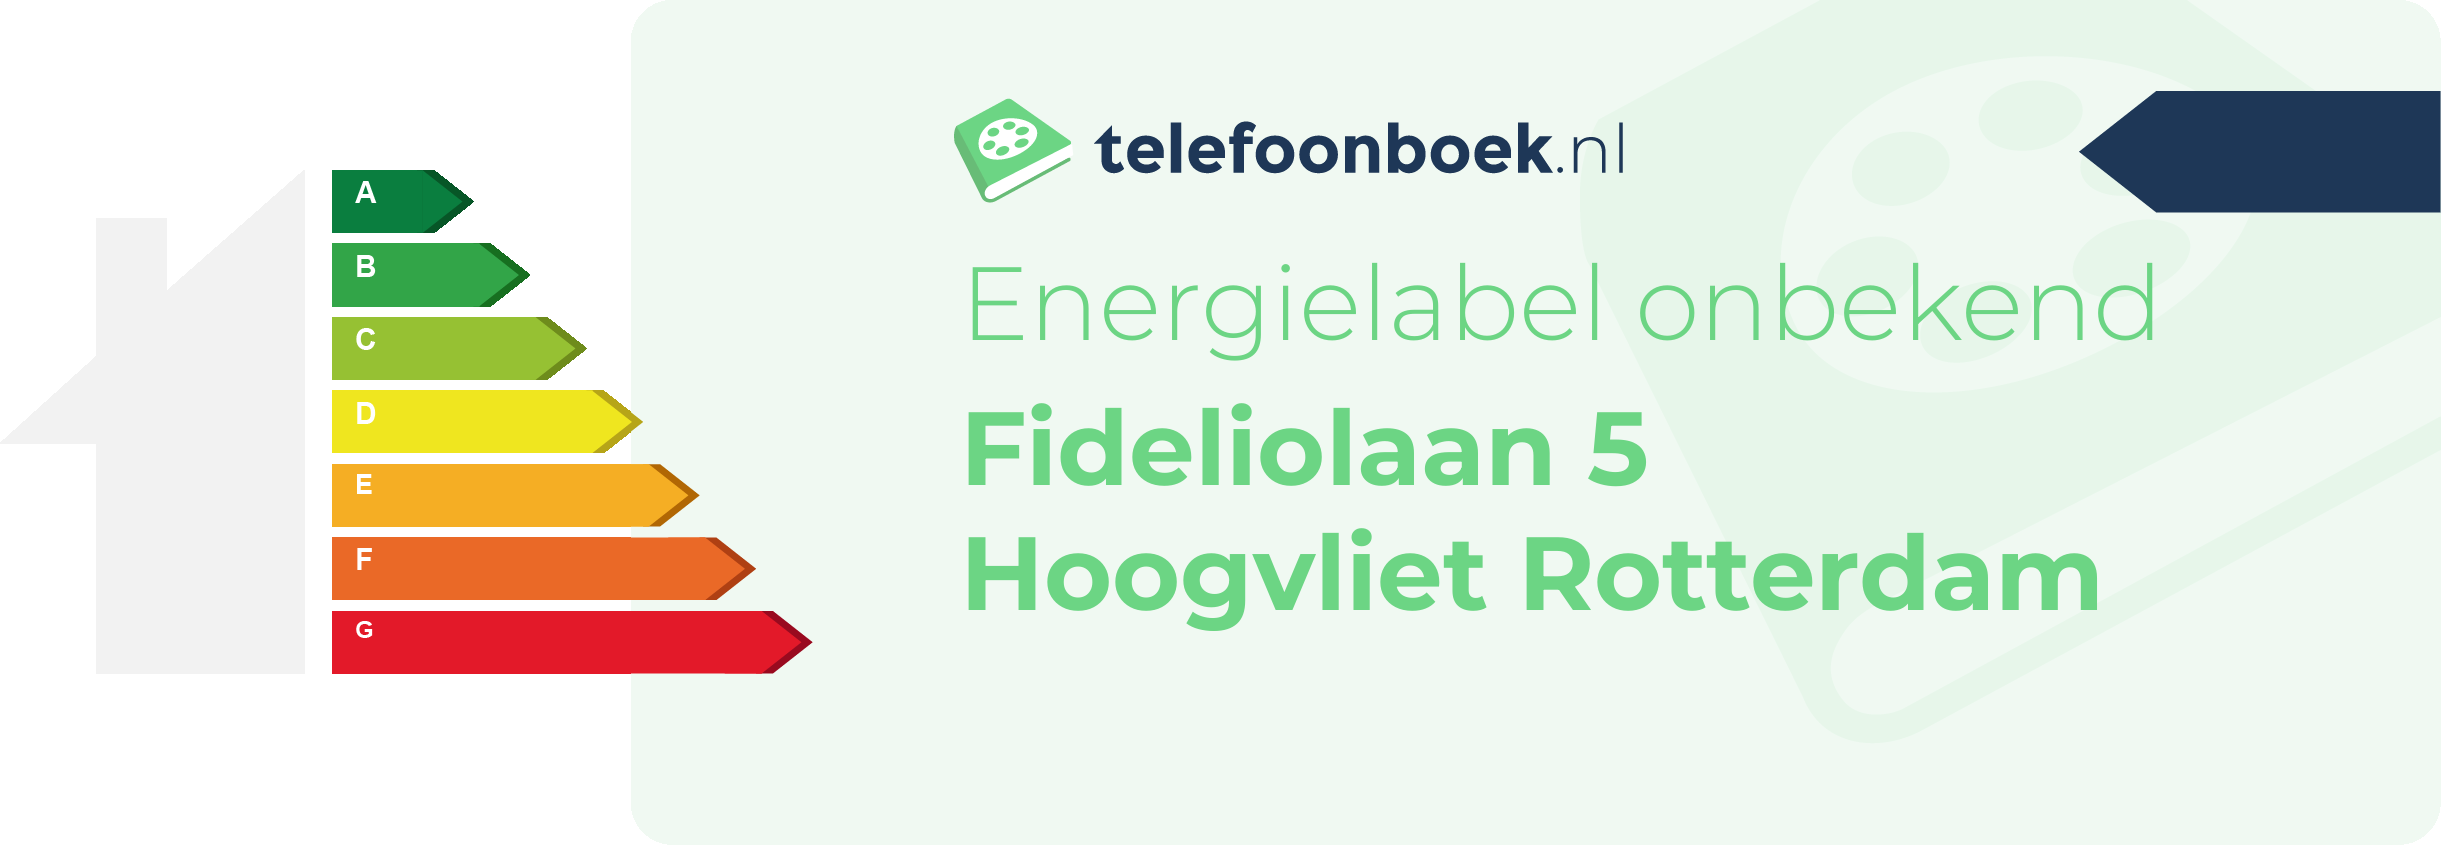 Energielabel Fideliolaan 5 Hoogvliet Rotterdam